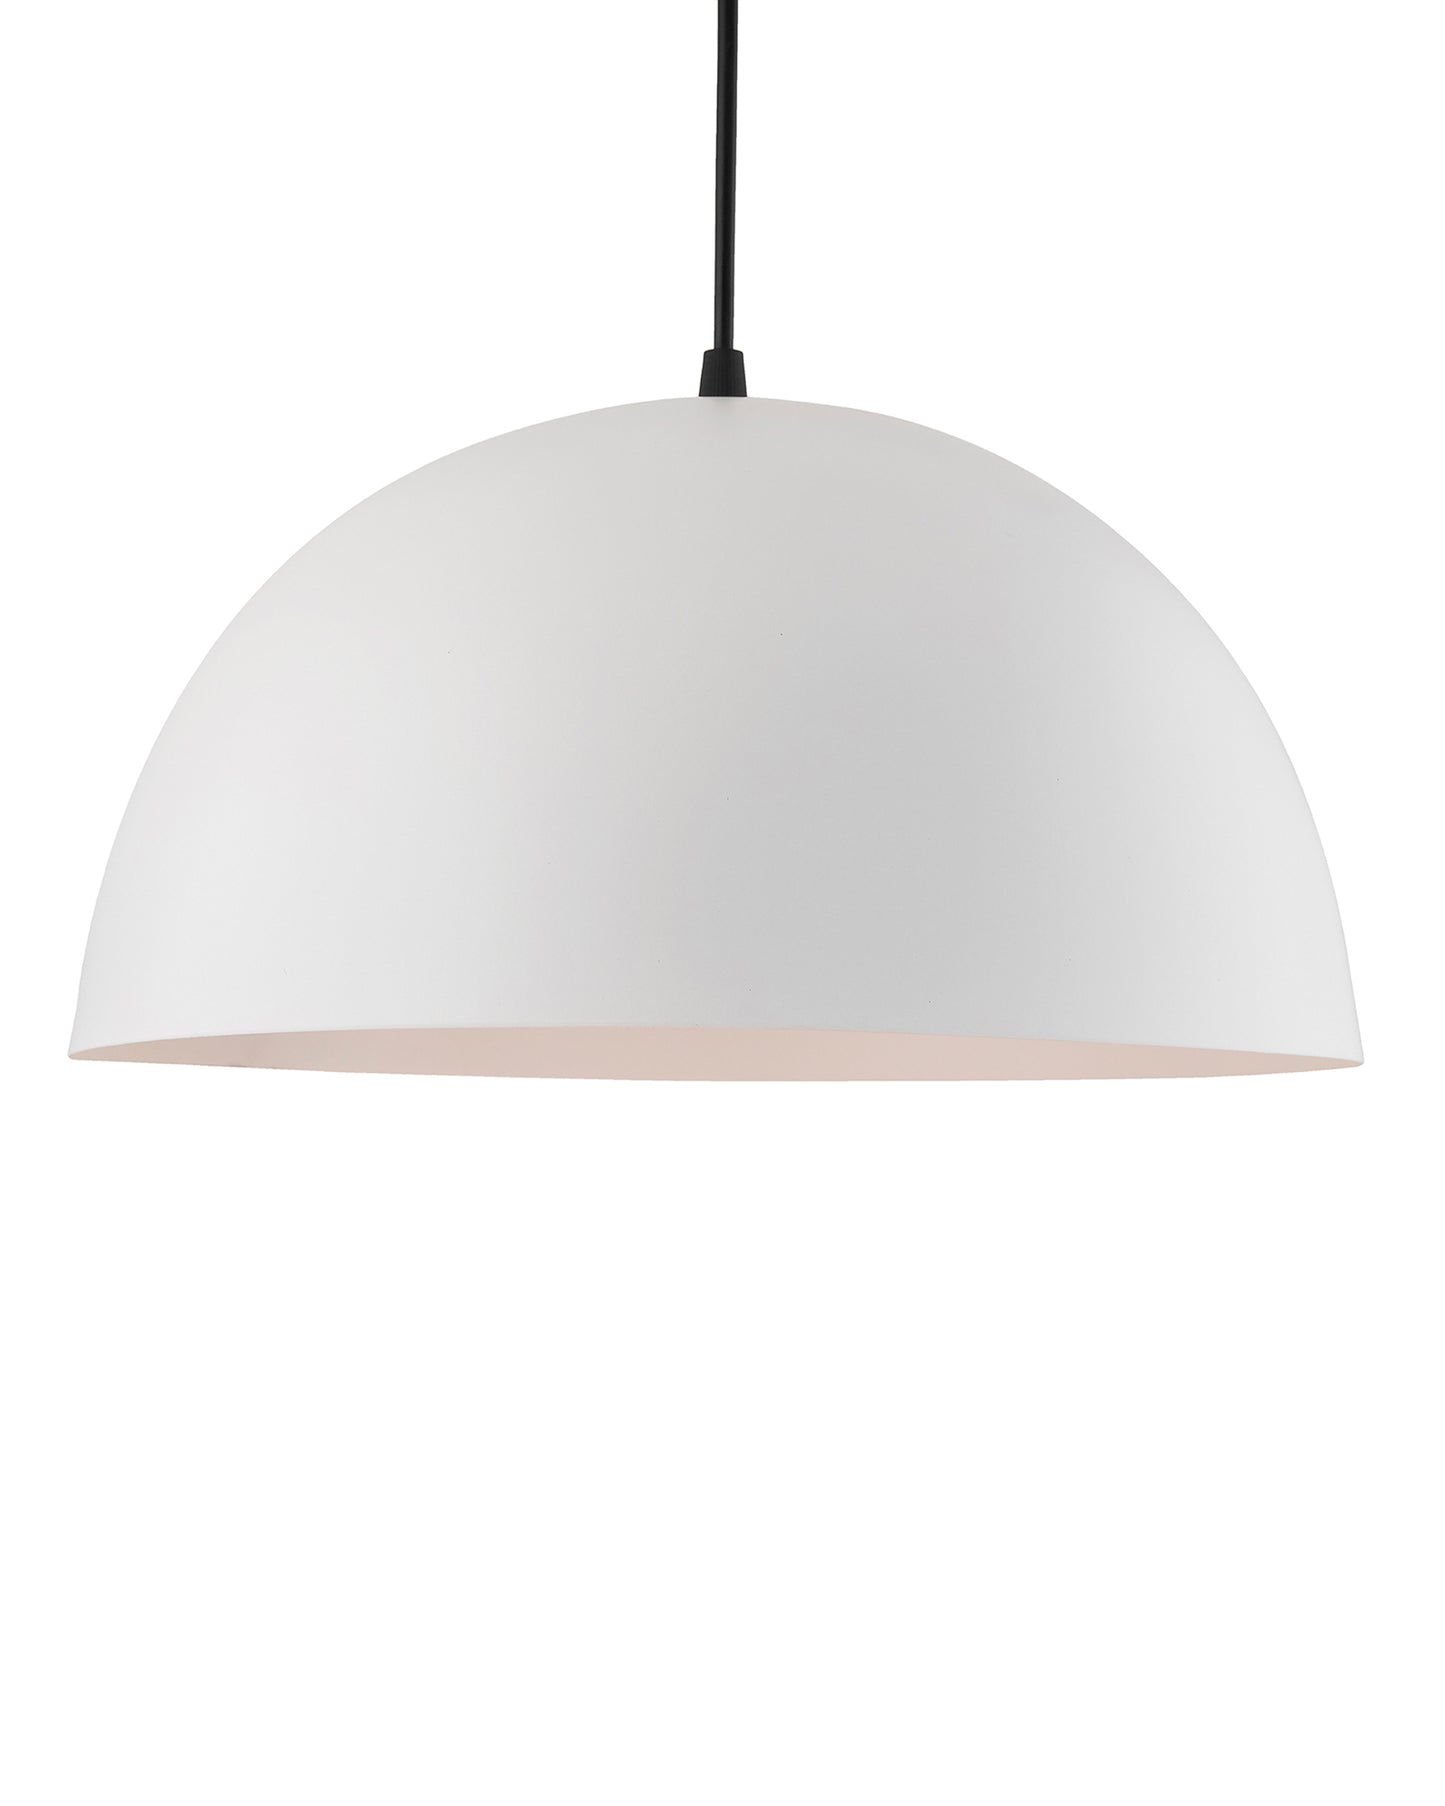 Metallic White Pendant Hanging Light, Hanging Lamp 14", Industrial E27 lamp